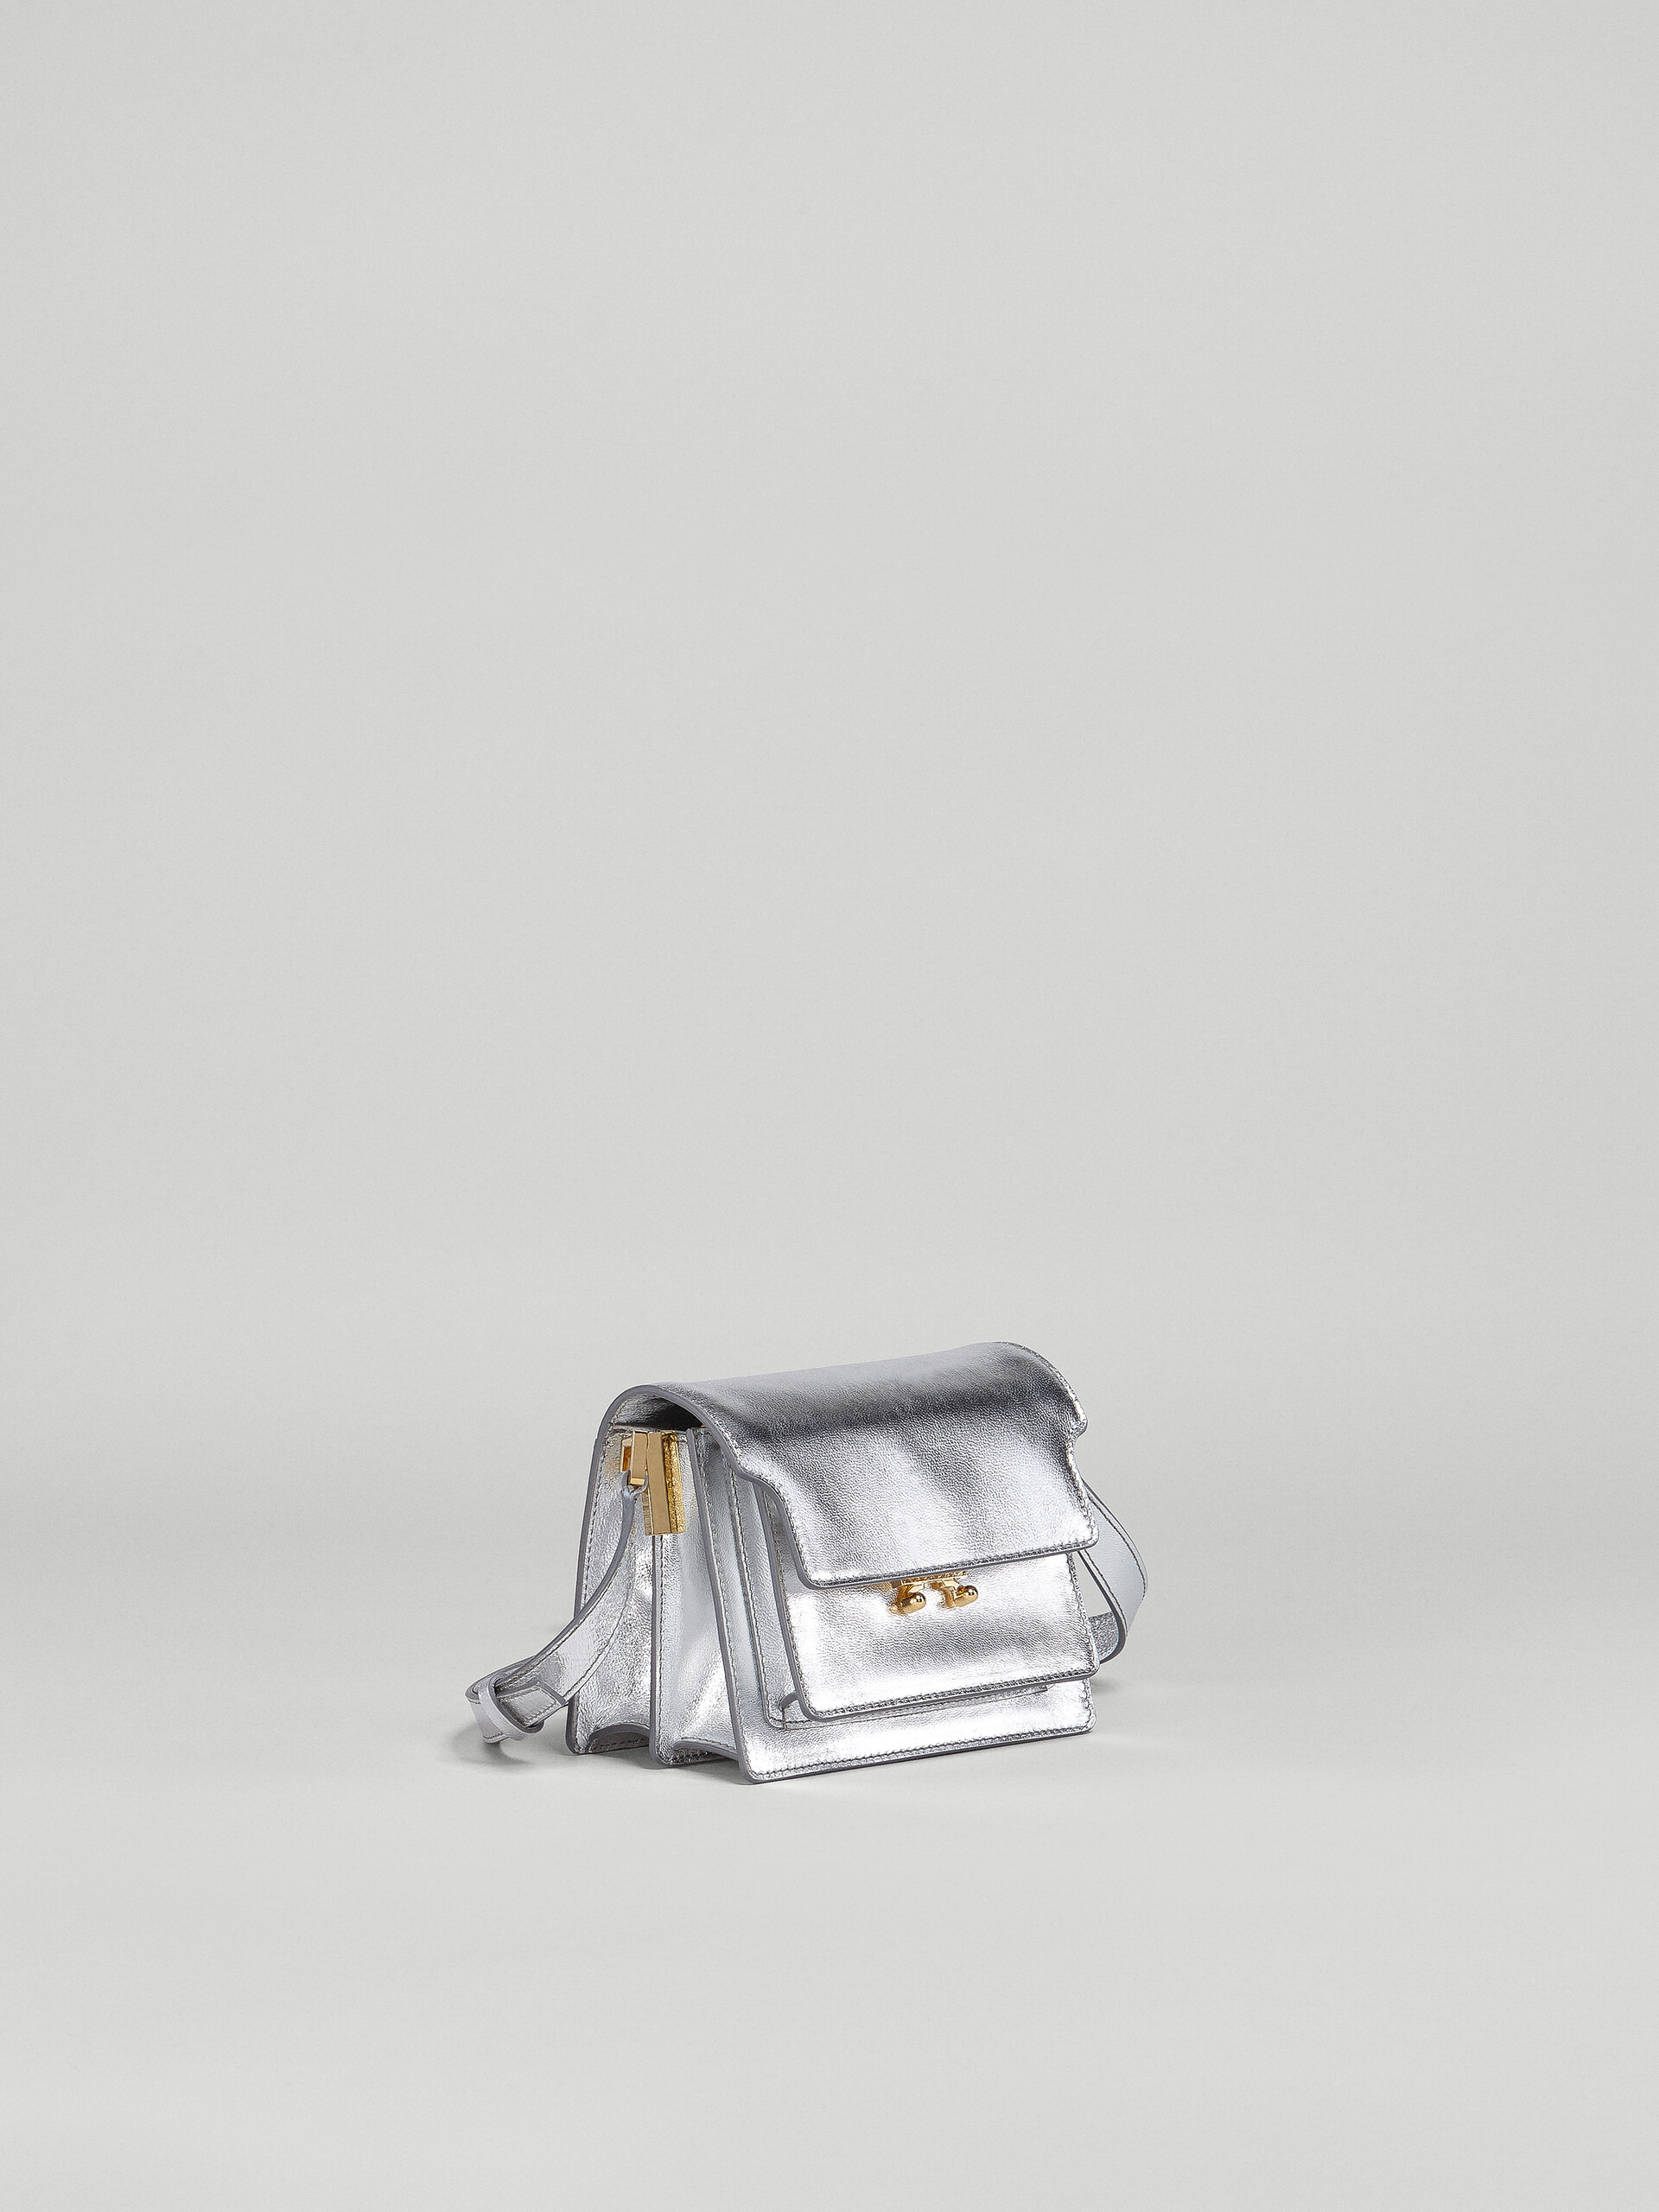 TRUNK SOFT bag in pelle metallizzata argento - Borse a spalla - Image 5